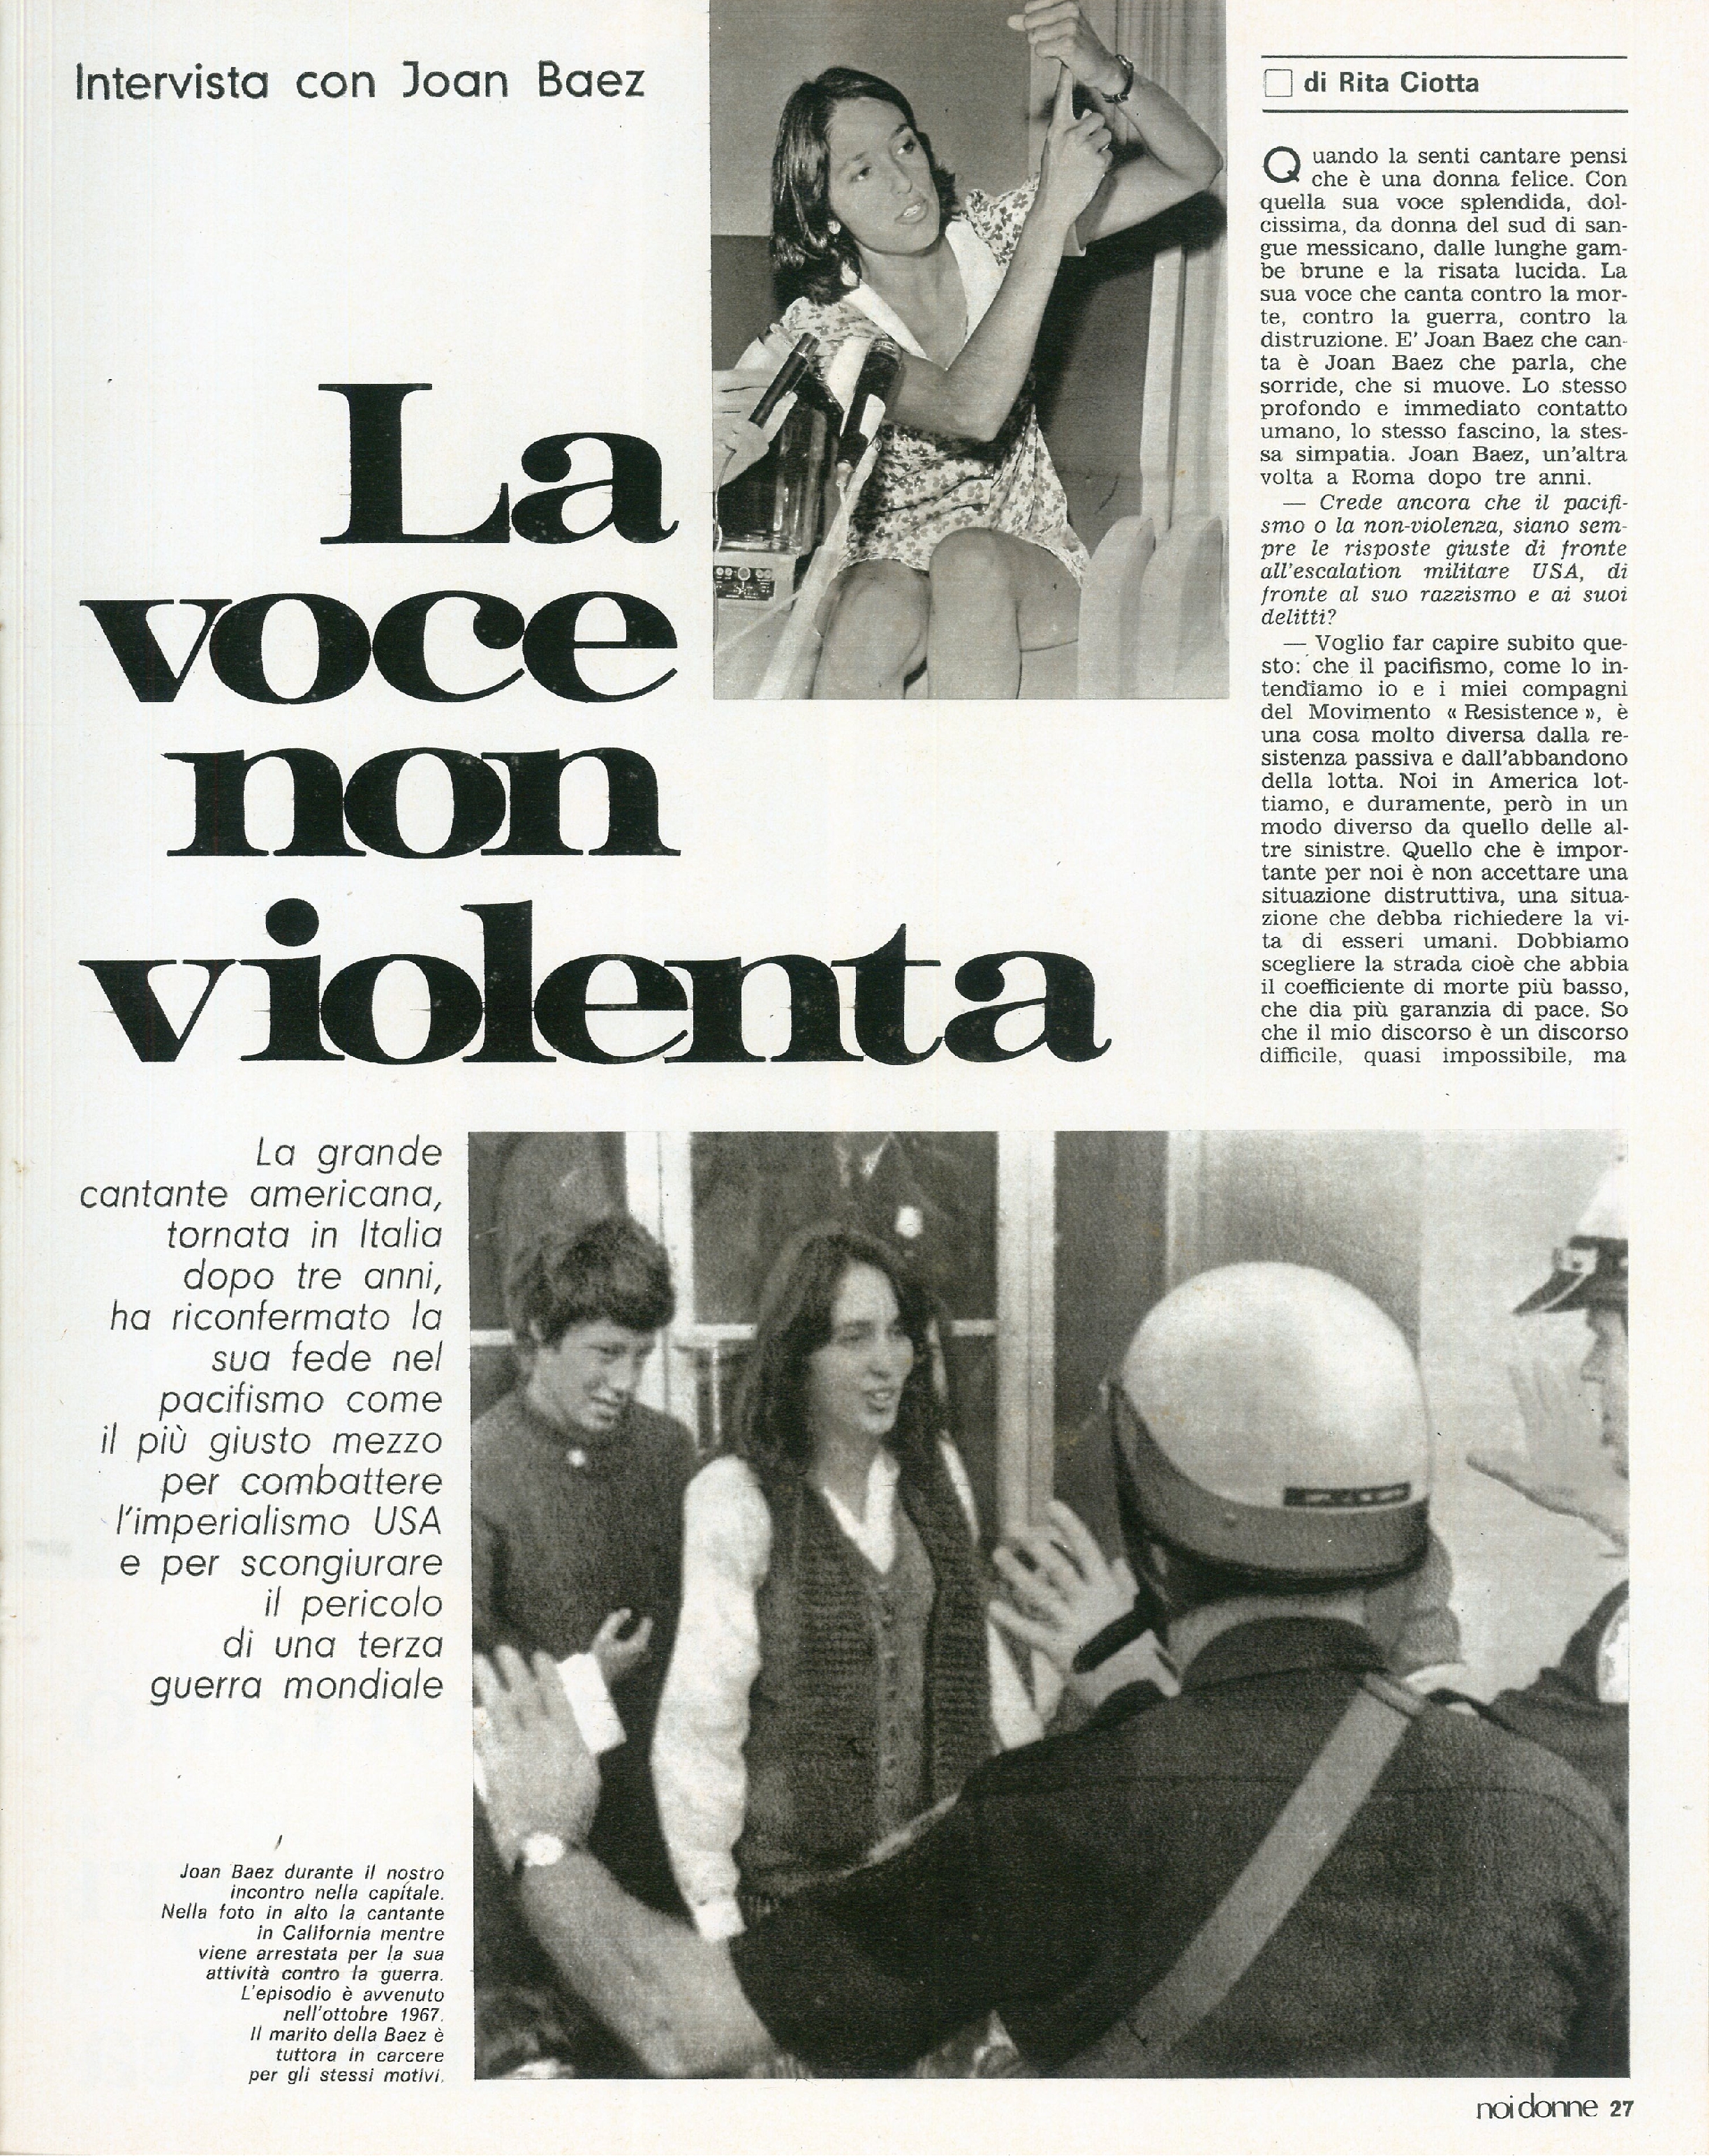 Foto: Le donne del Vajont promettono battaglia; i giochi della gioventù; Alberto Sordi: meglio scapolo; Joan Baez, la voce non violenta